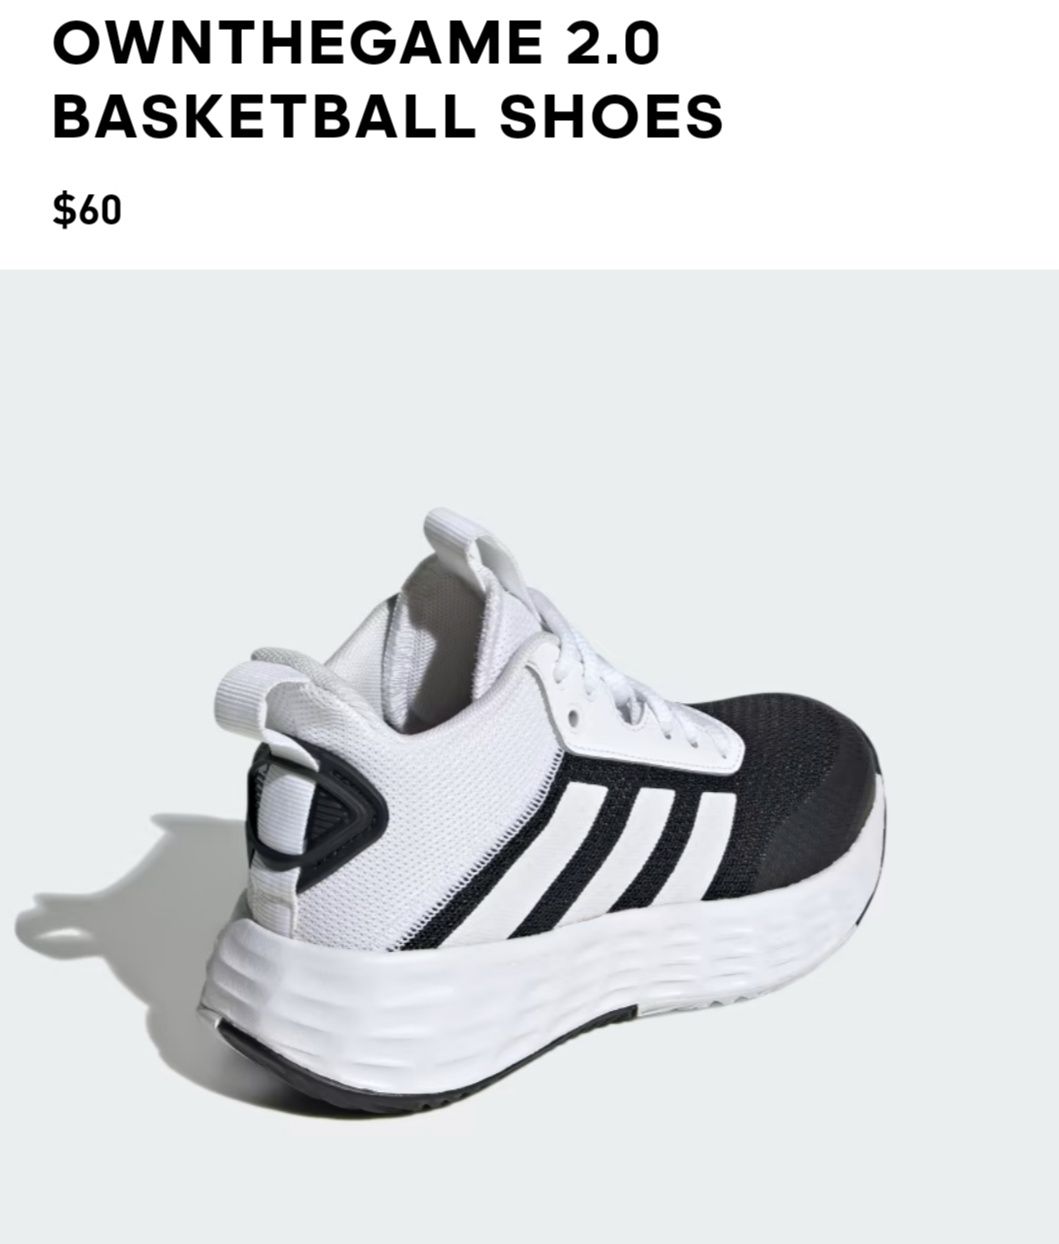 Высокие баскетбольные кроссовки Adidas ownthegame 2.0 оригинал р.38